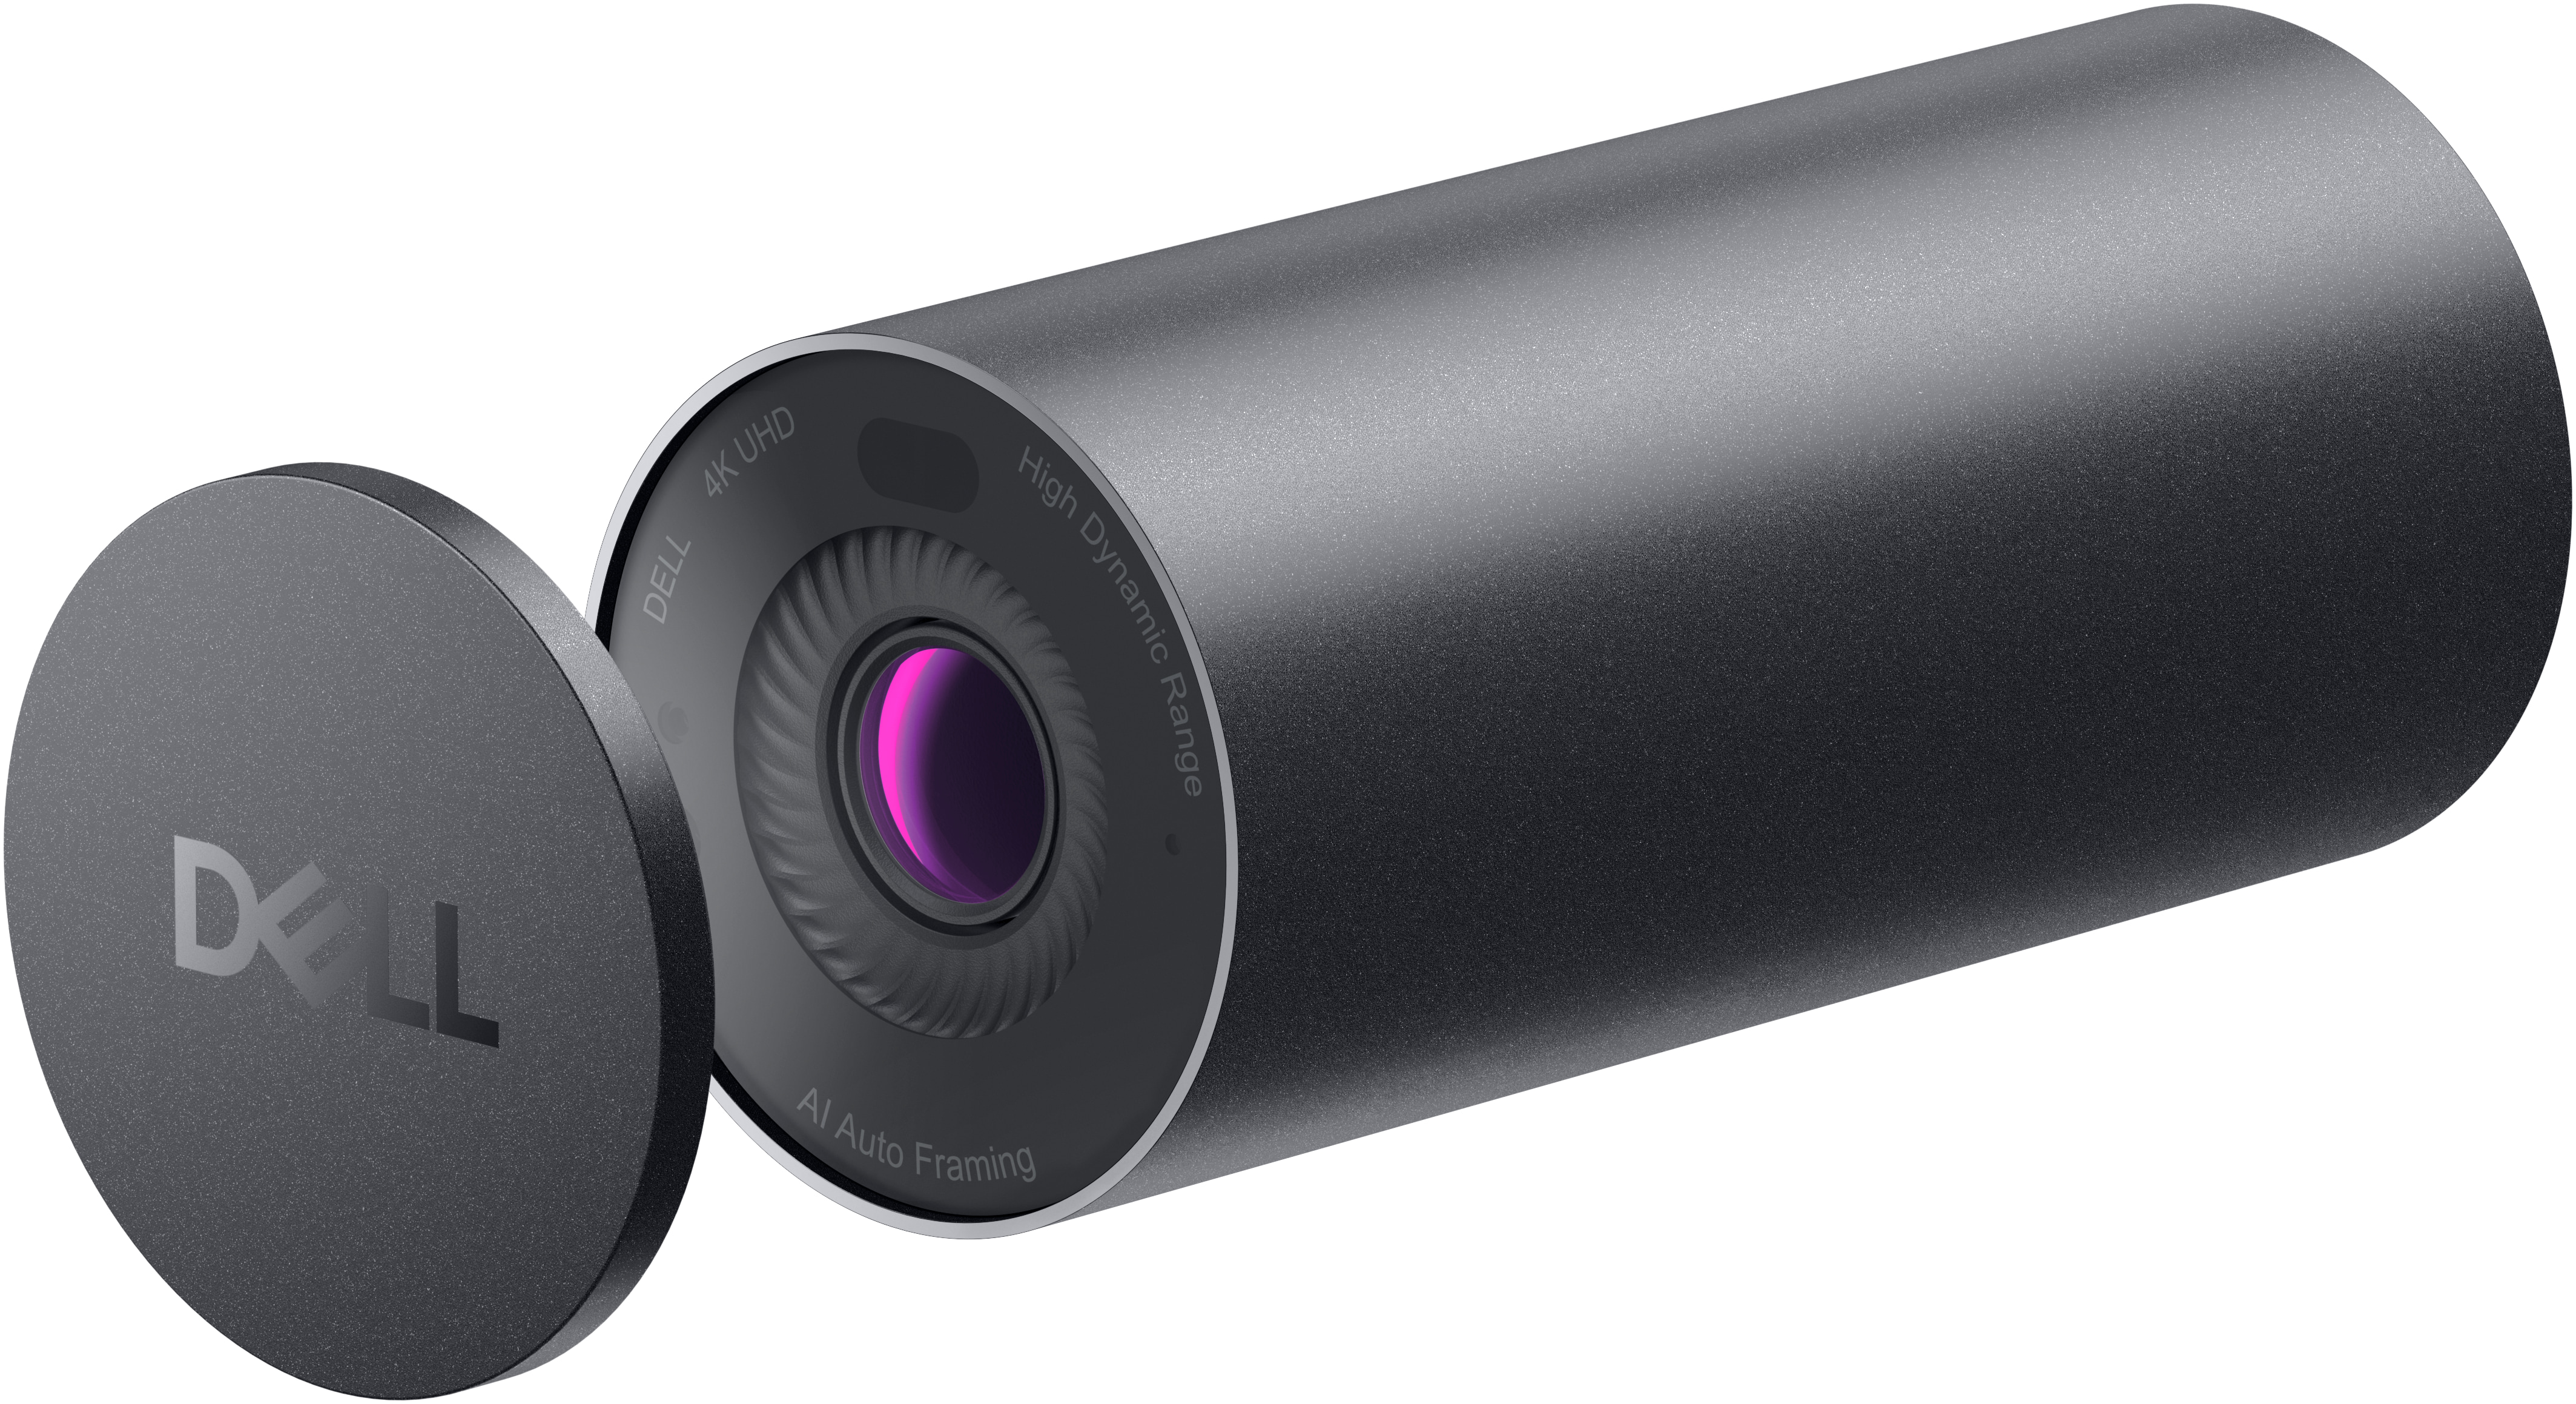 Dell présente un écran pensé pour la visioconférence avec une webcam 4K  intégrée